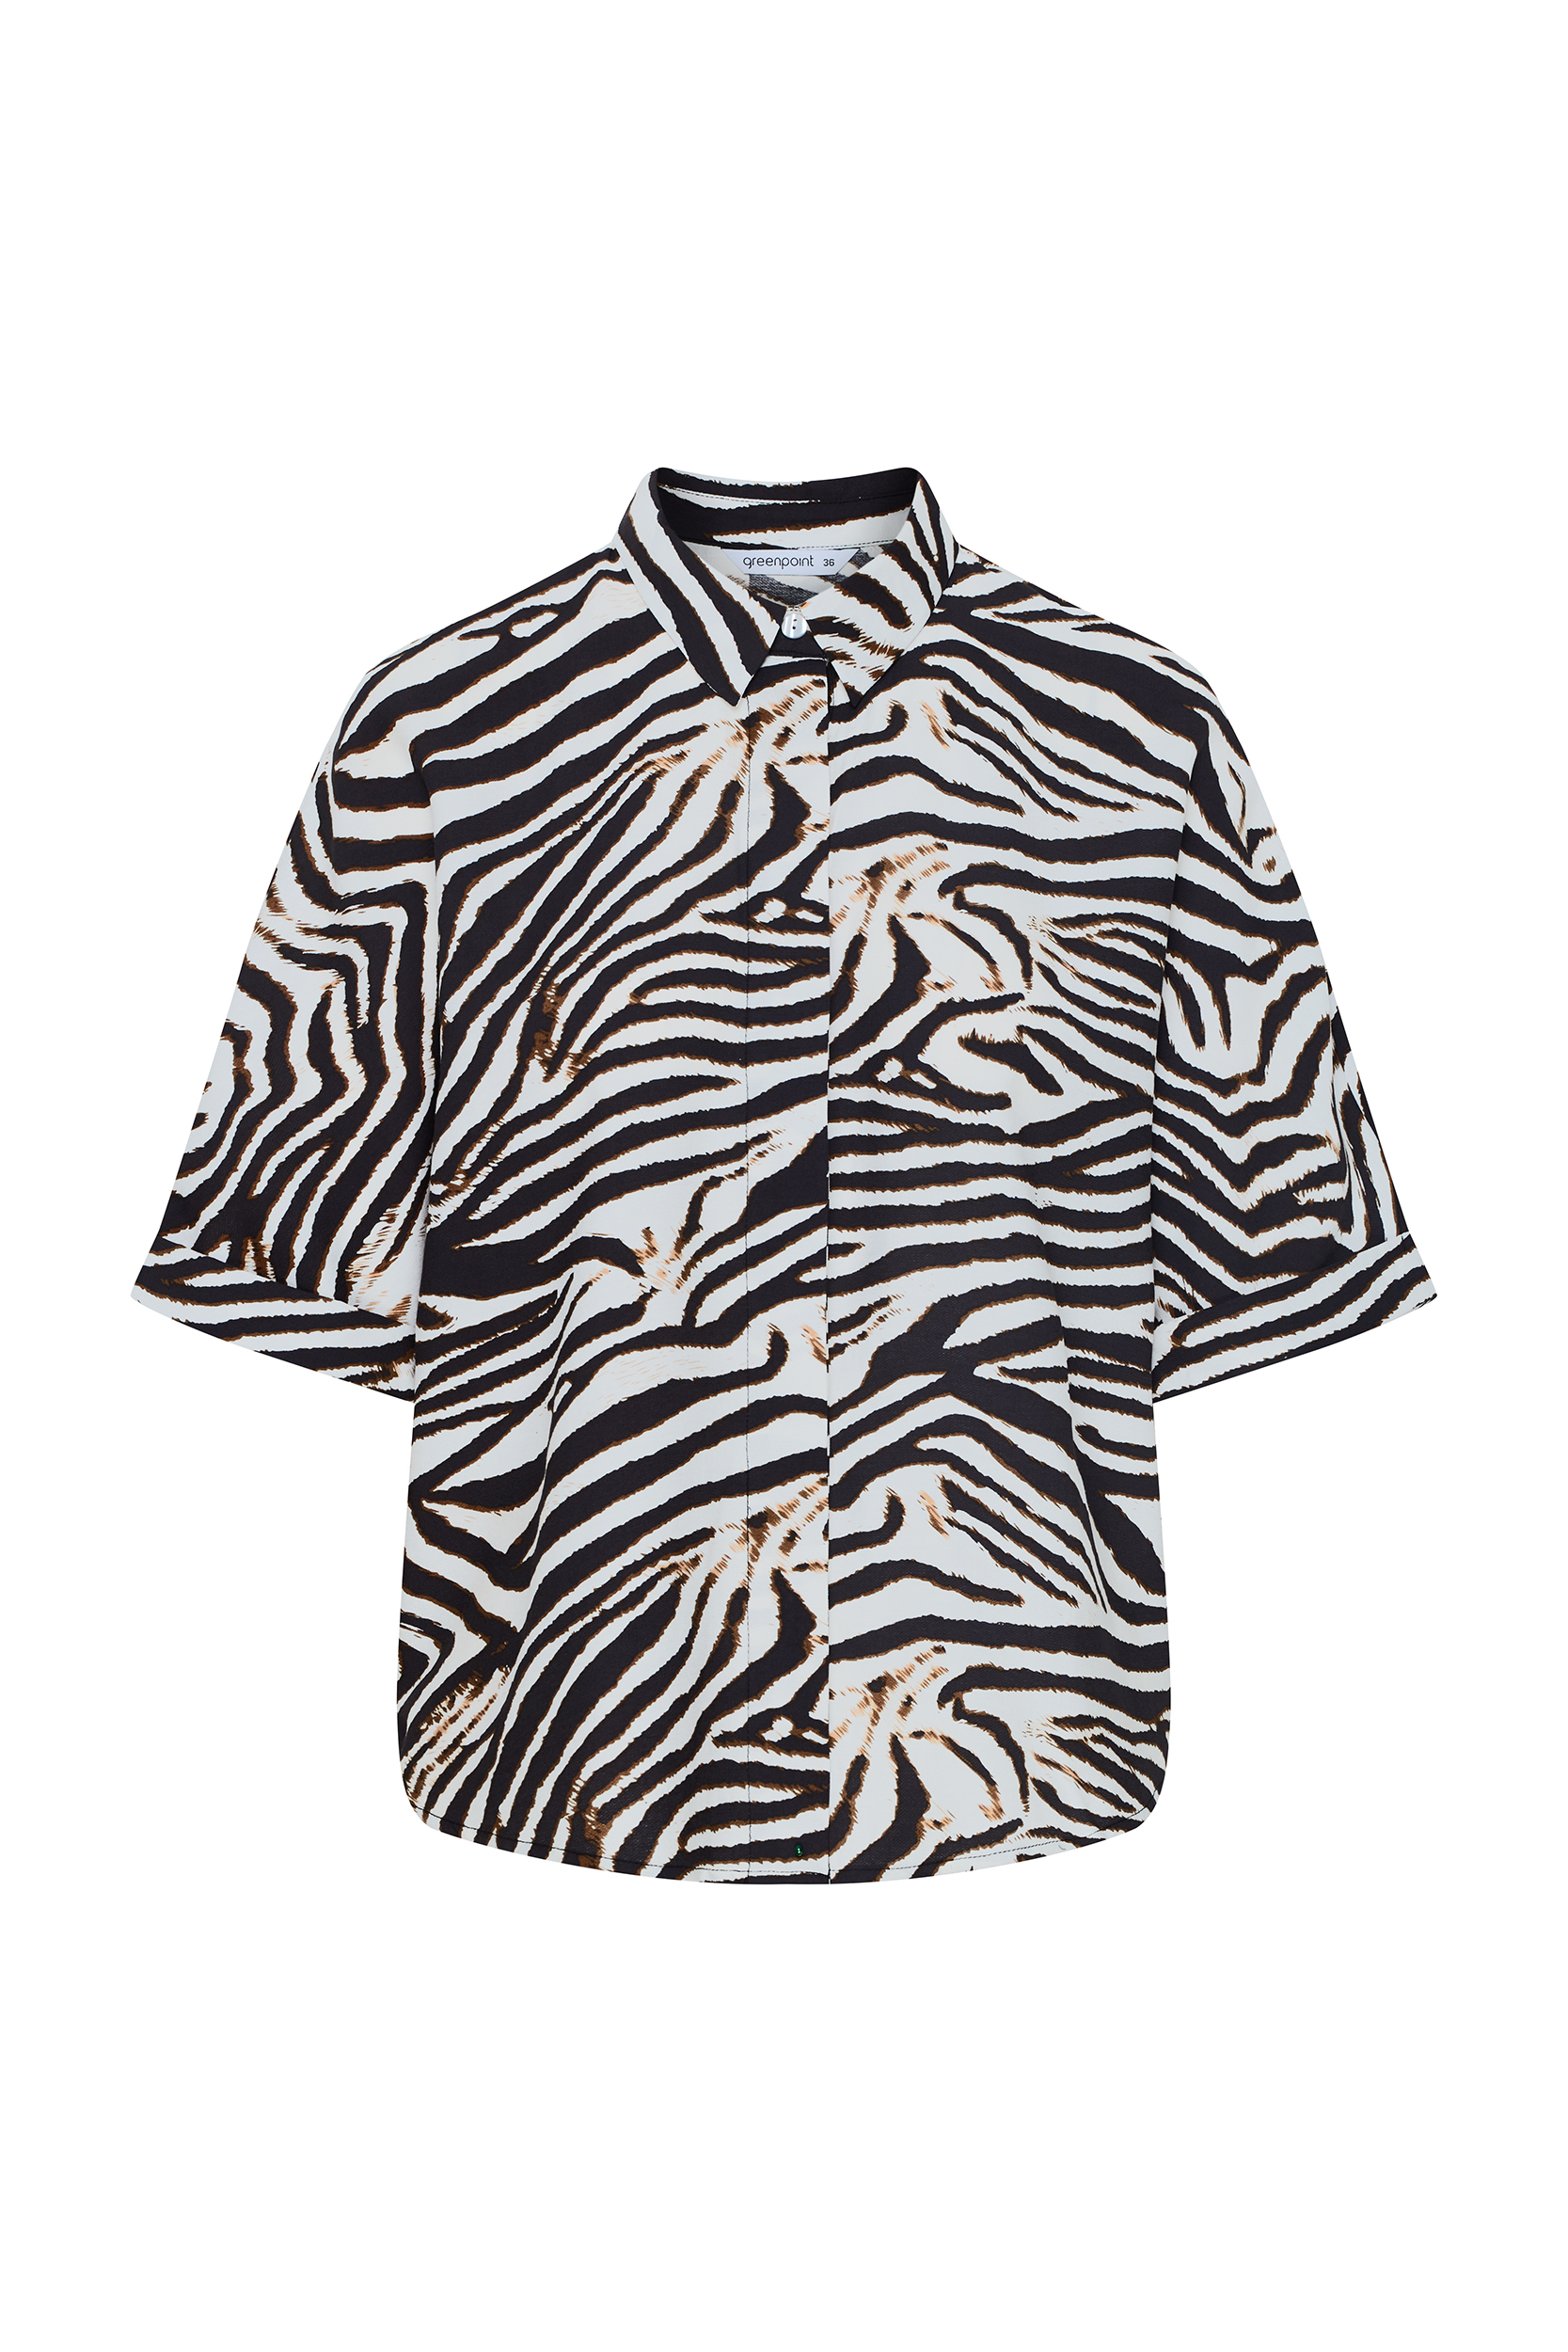 Luźna koszula z wiskozy, nadruk zebra